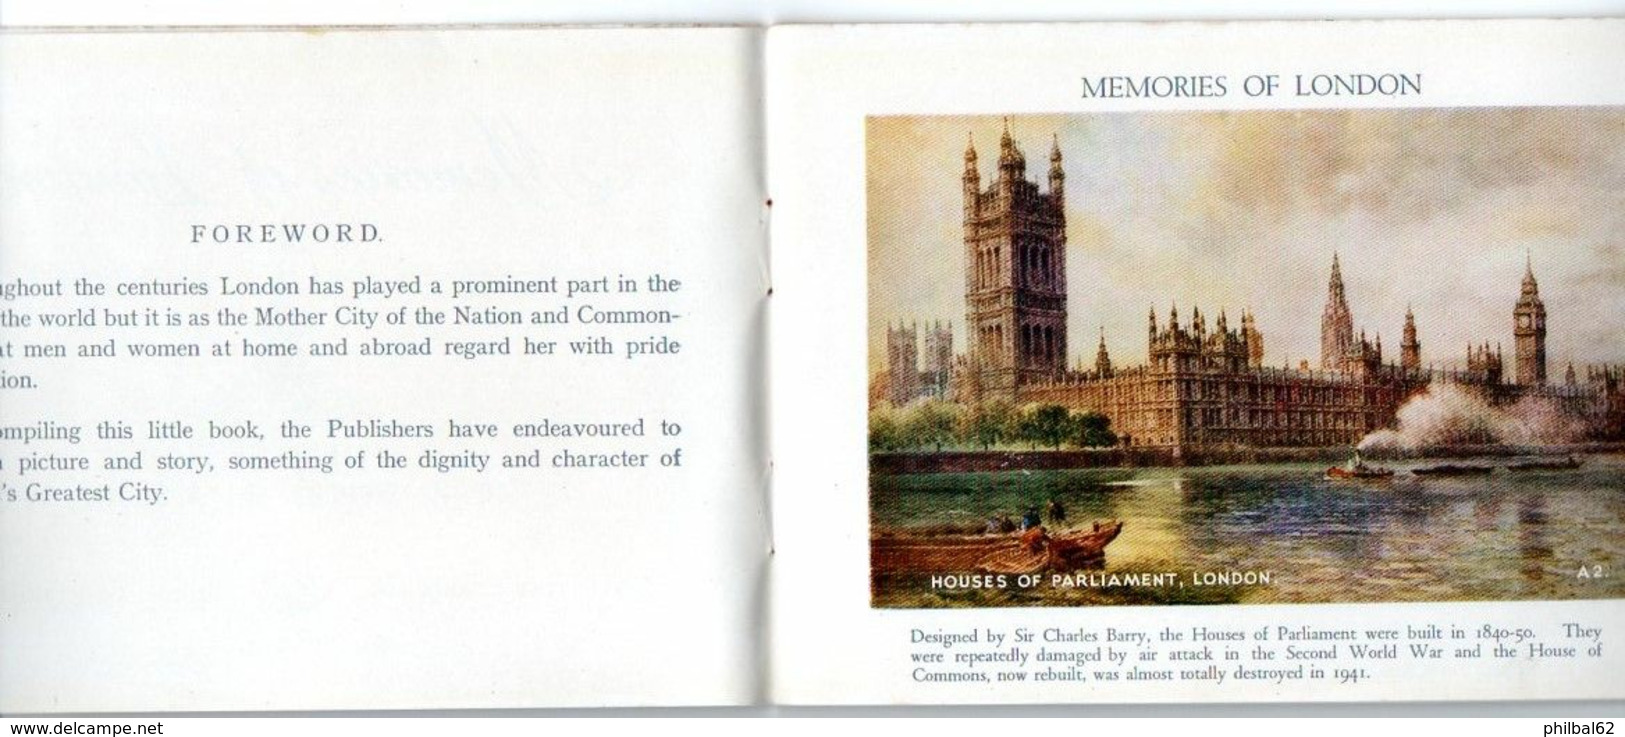 Livret : London Festival Of Britain Souvenir. Memories Of London, A Picture Souvenir Of The World's Greatest City. - Europe